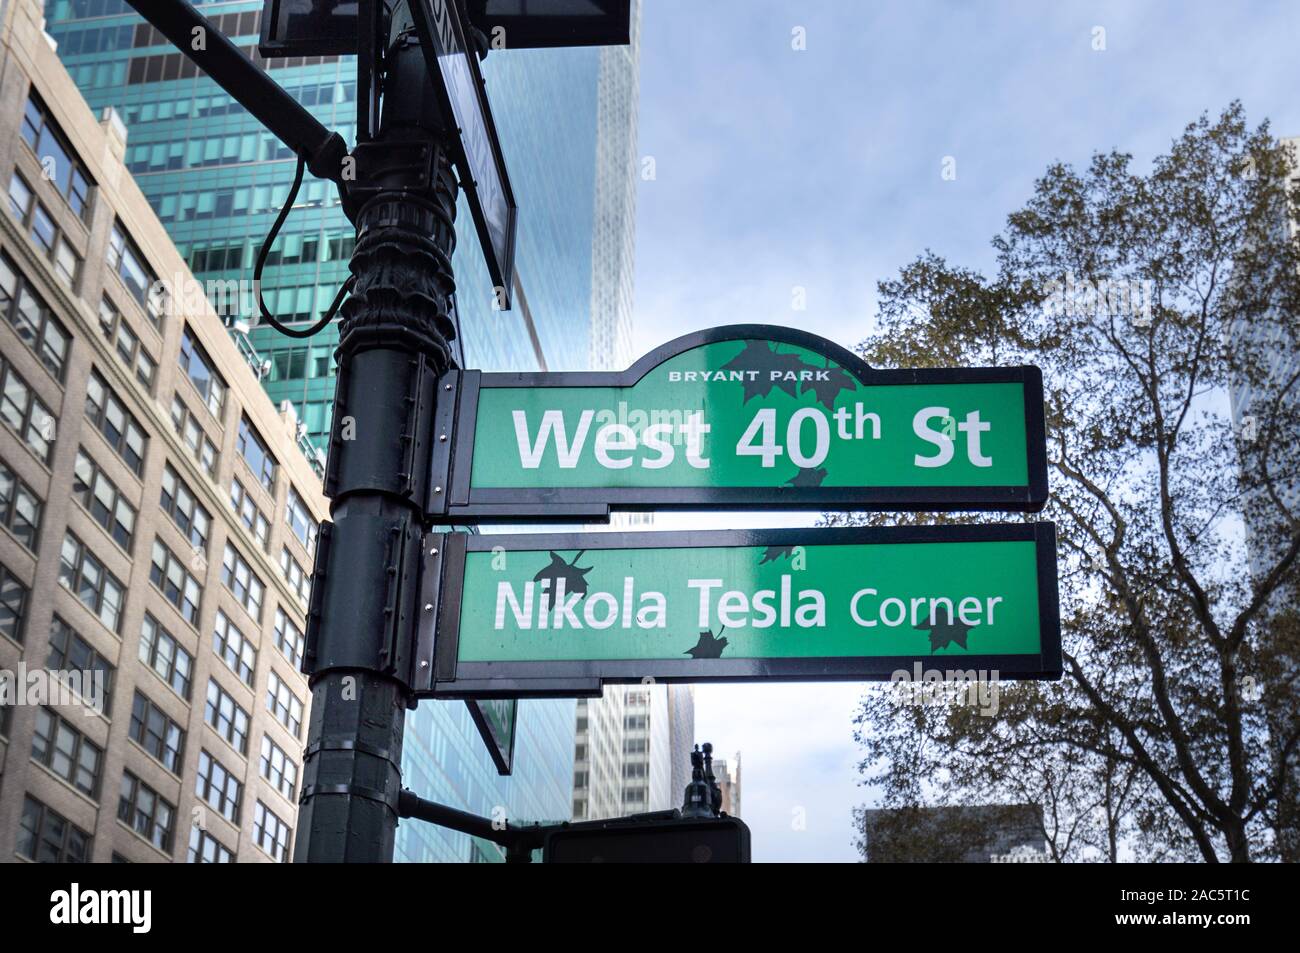 Nikola Tesla corner street sign in Bryant Park. New York City. Stock Photo